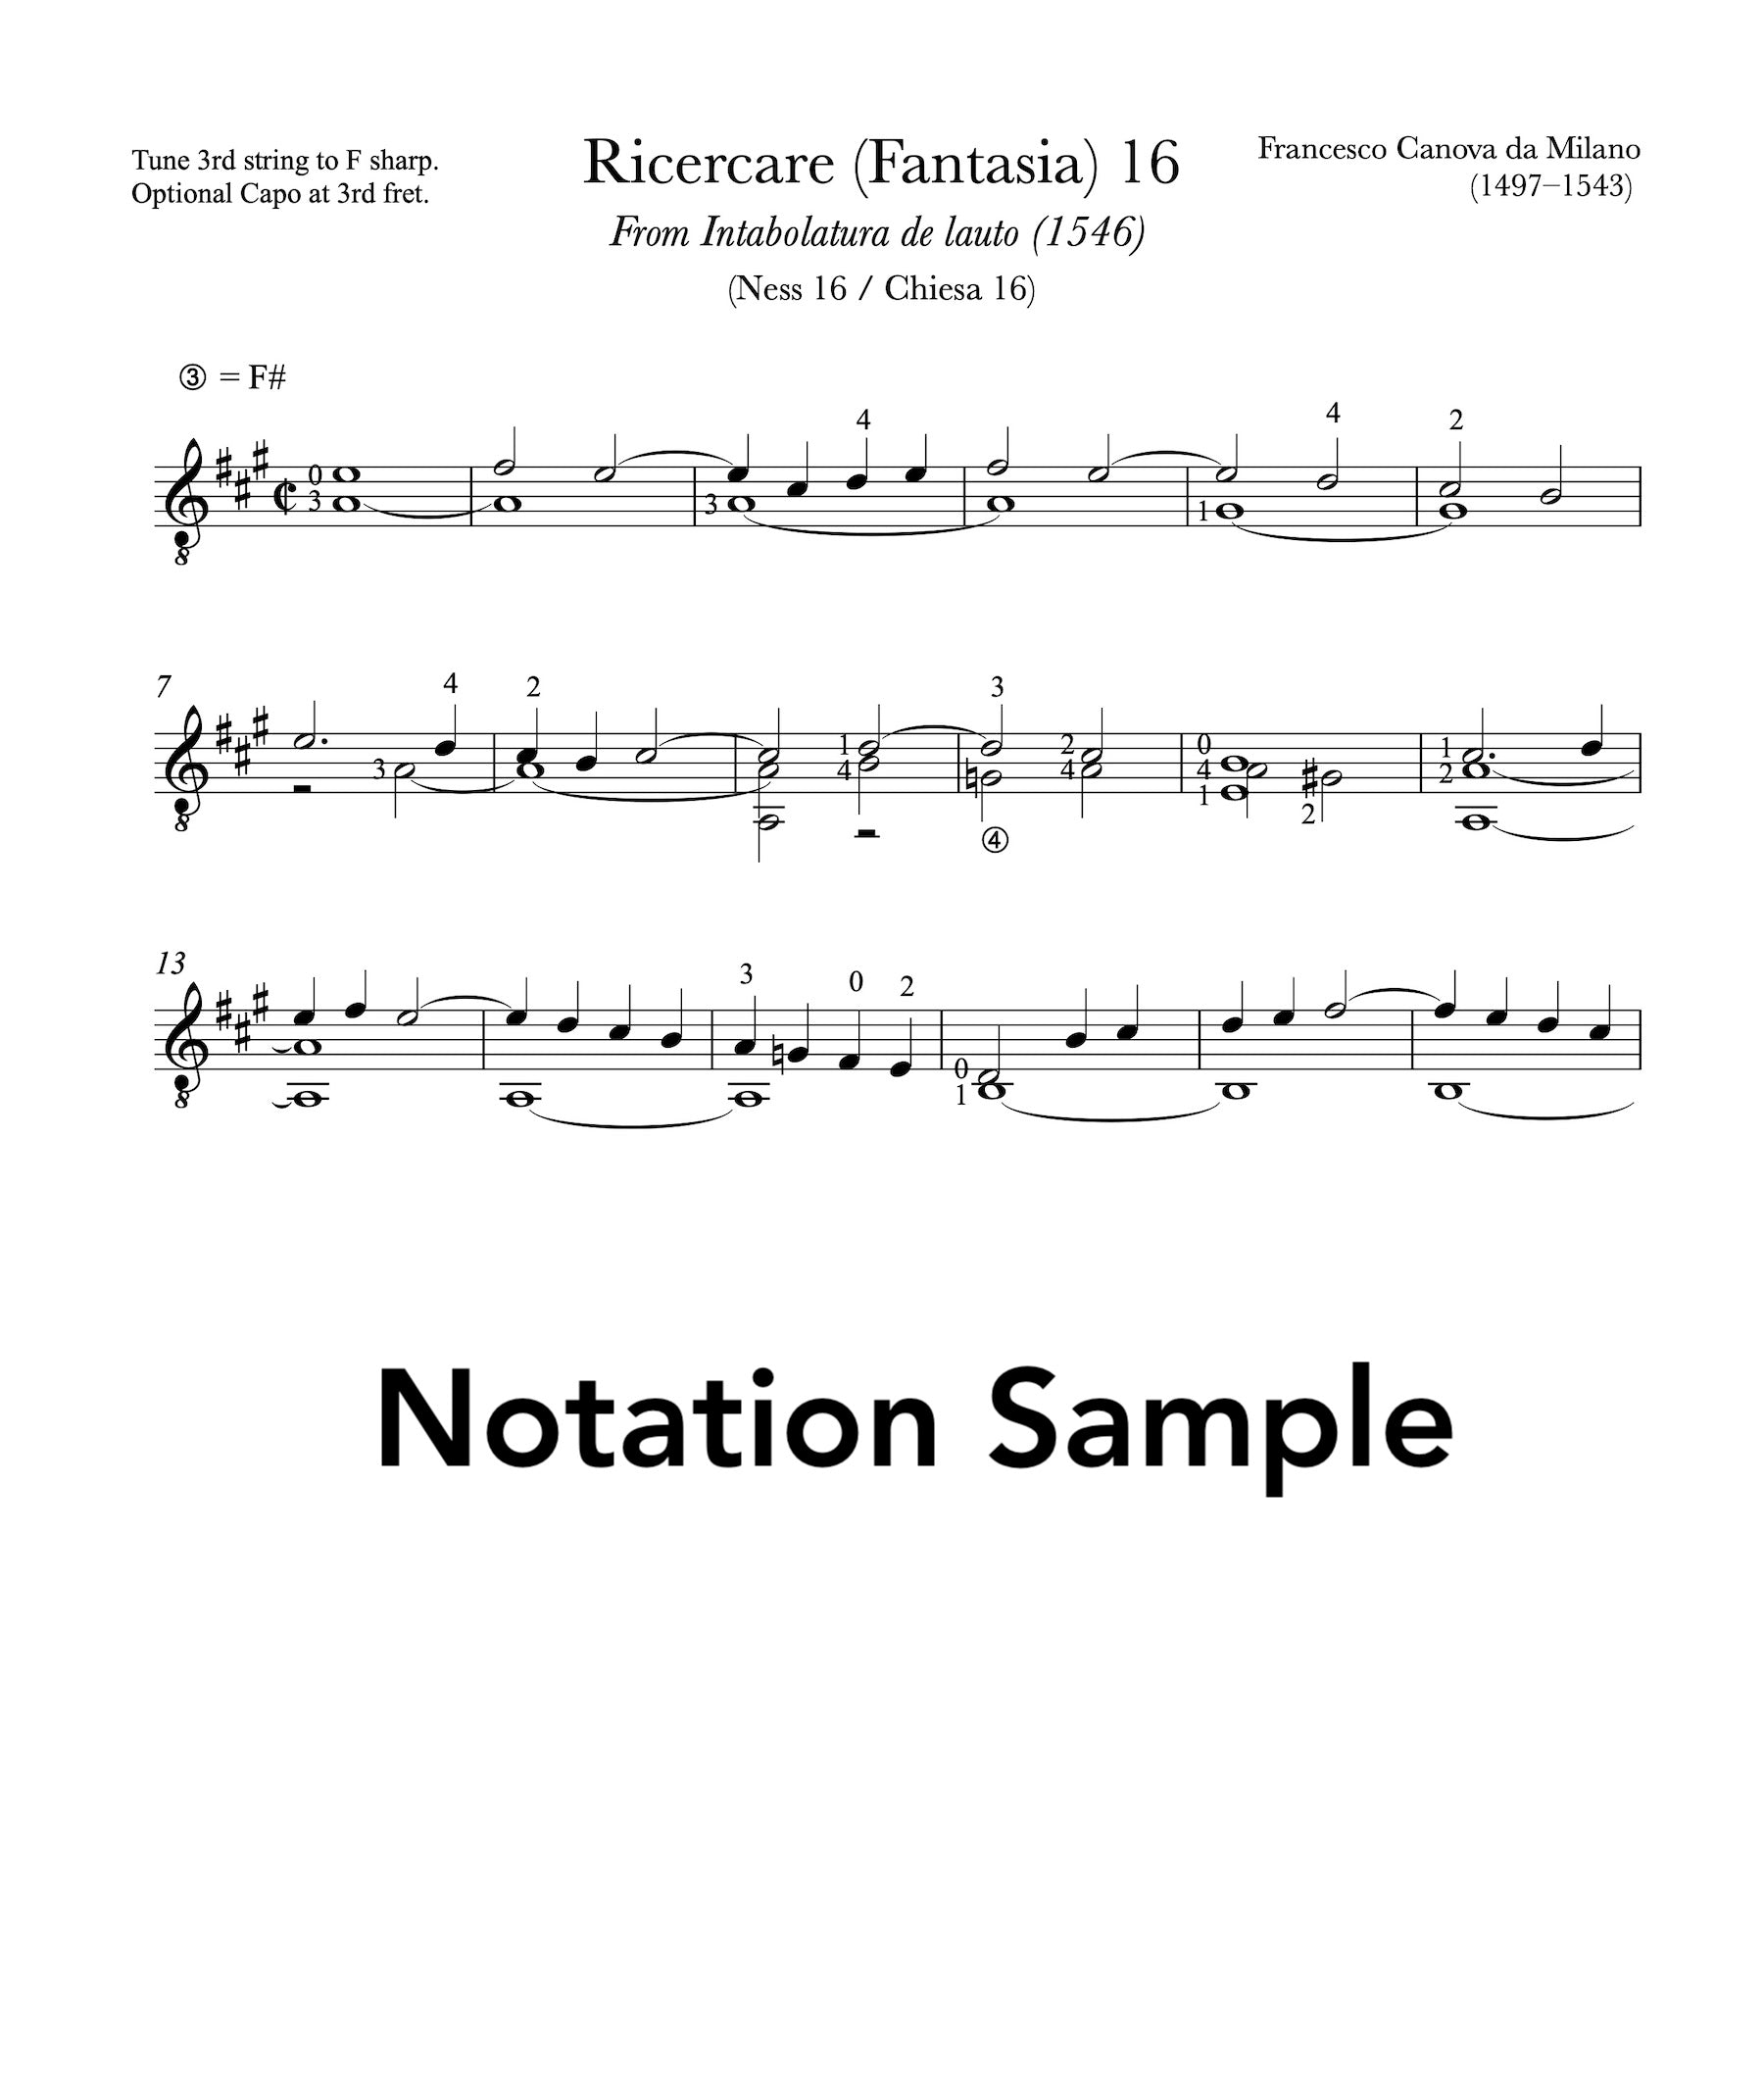 Ricercare (Fantasia) 16 by Francesco da Milano (Notation Sample)